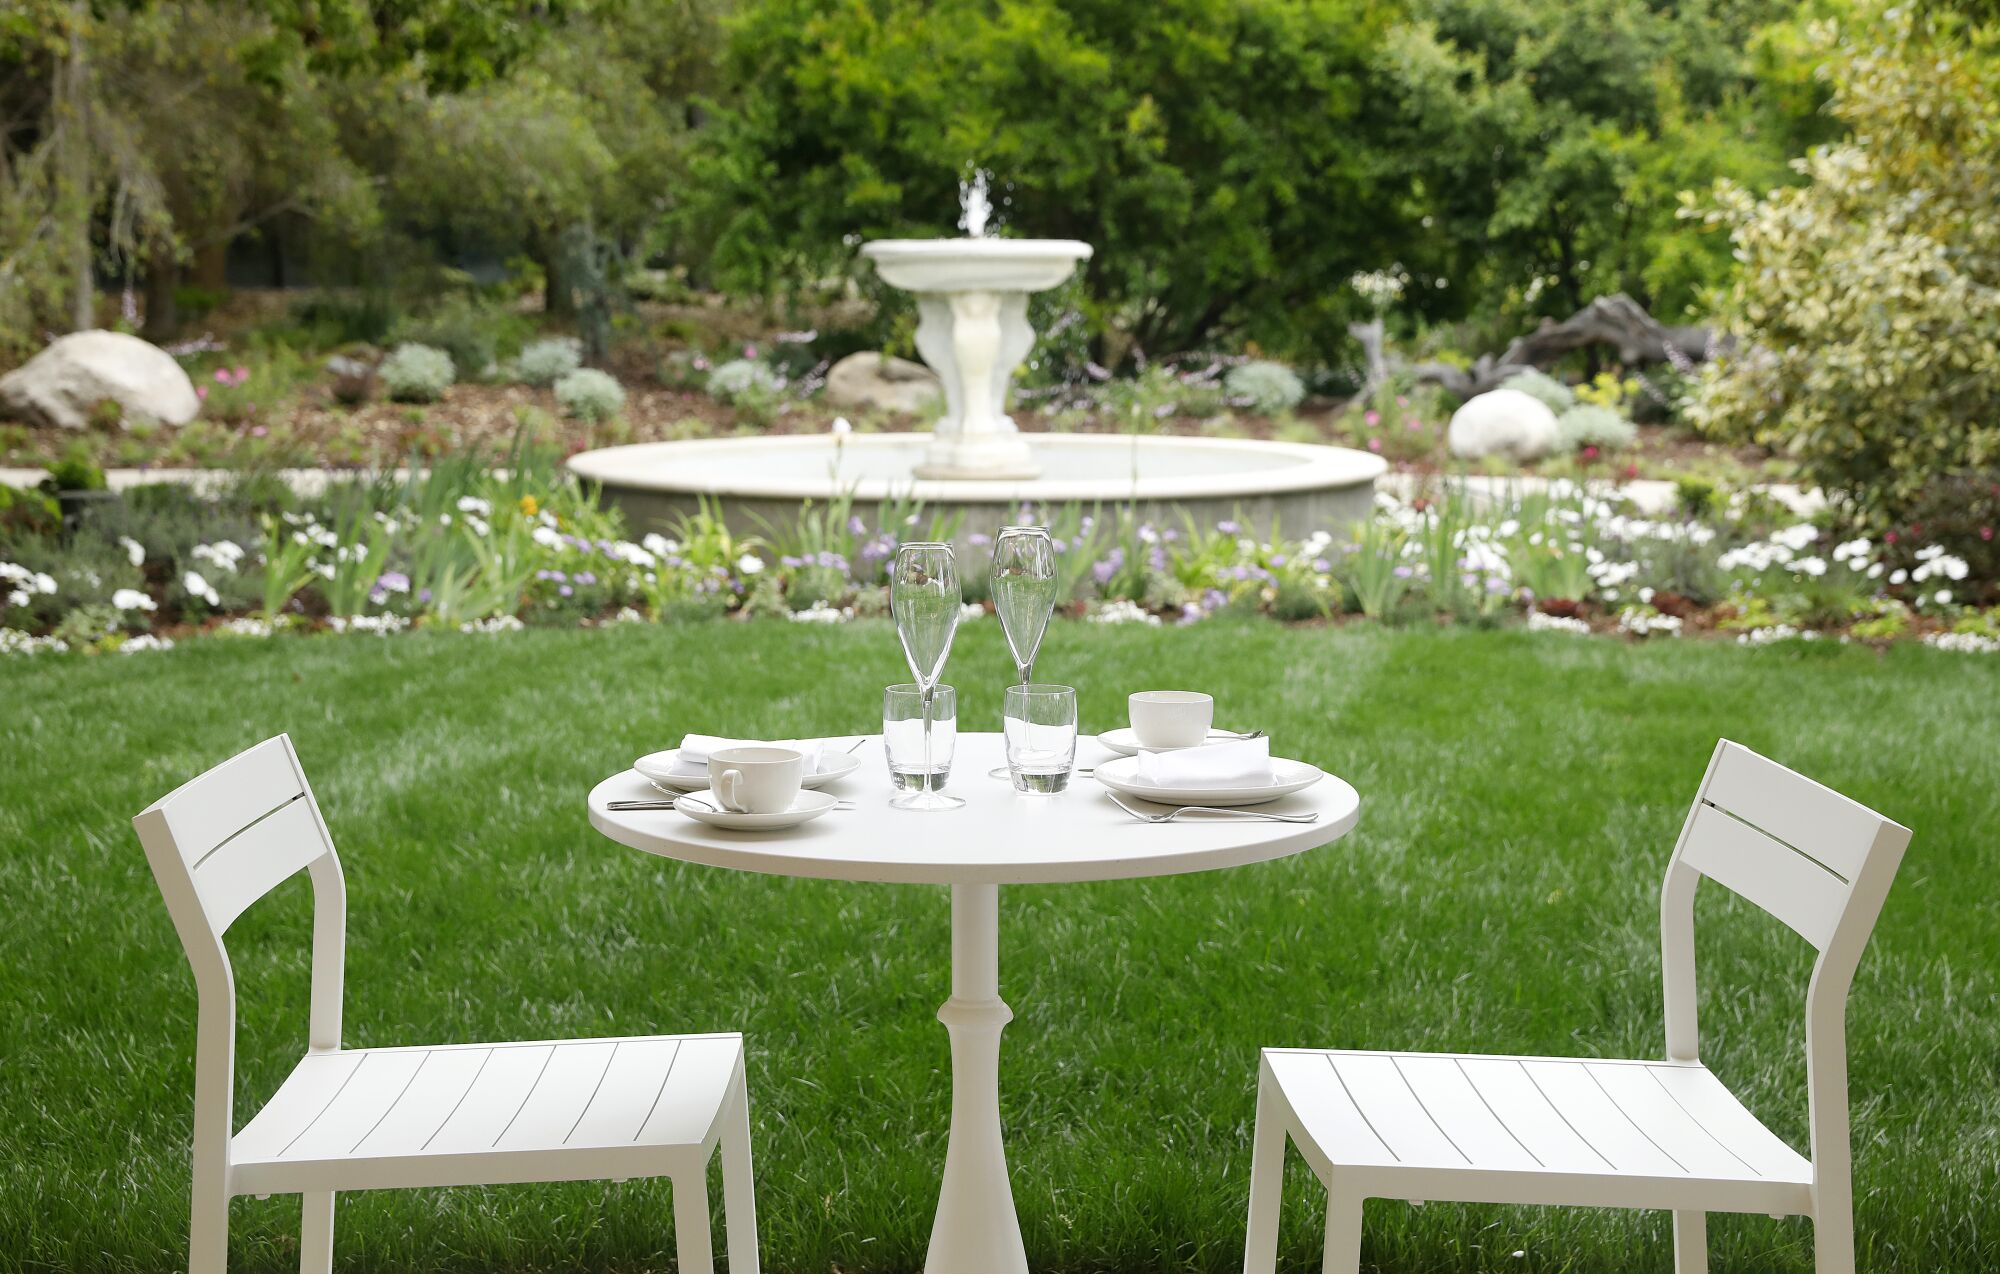 Ein weißer Tisch mit zwei Stühlen, dahinter ein Gartenbrunnen.